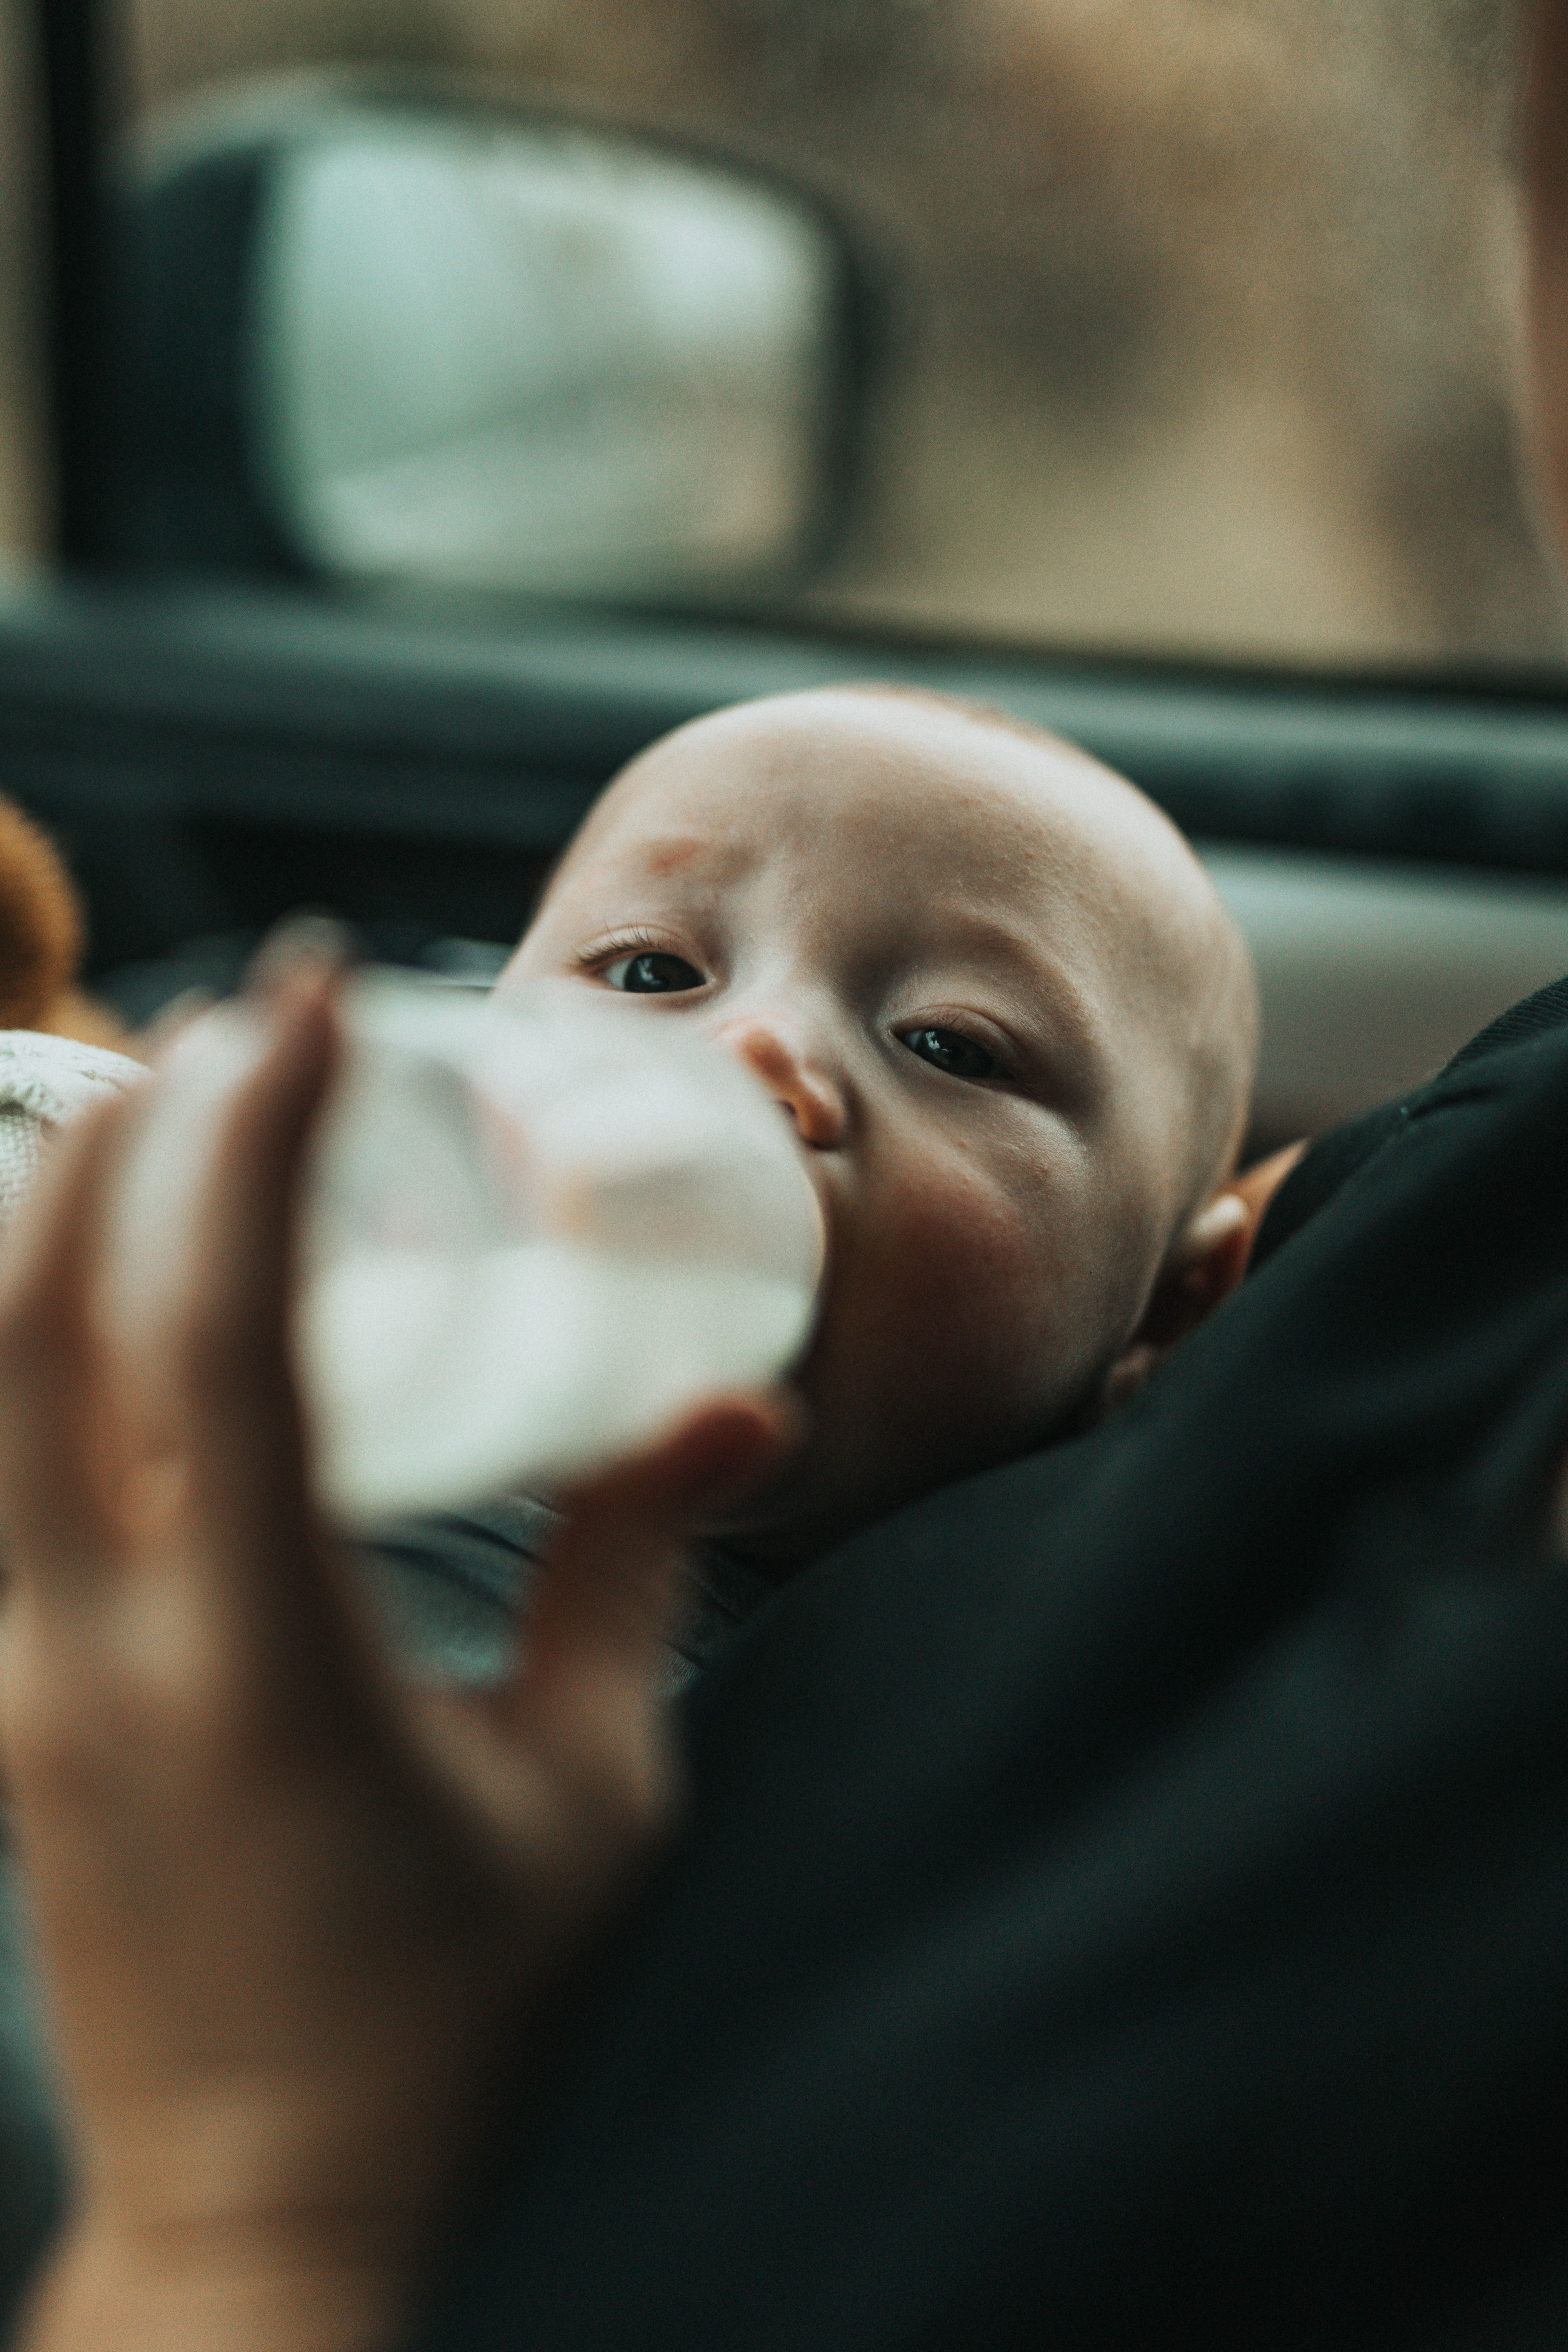 Baby fed bottle in car